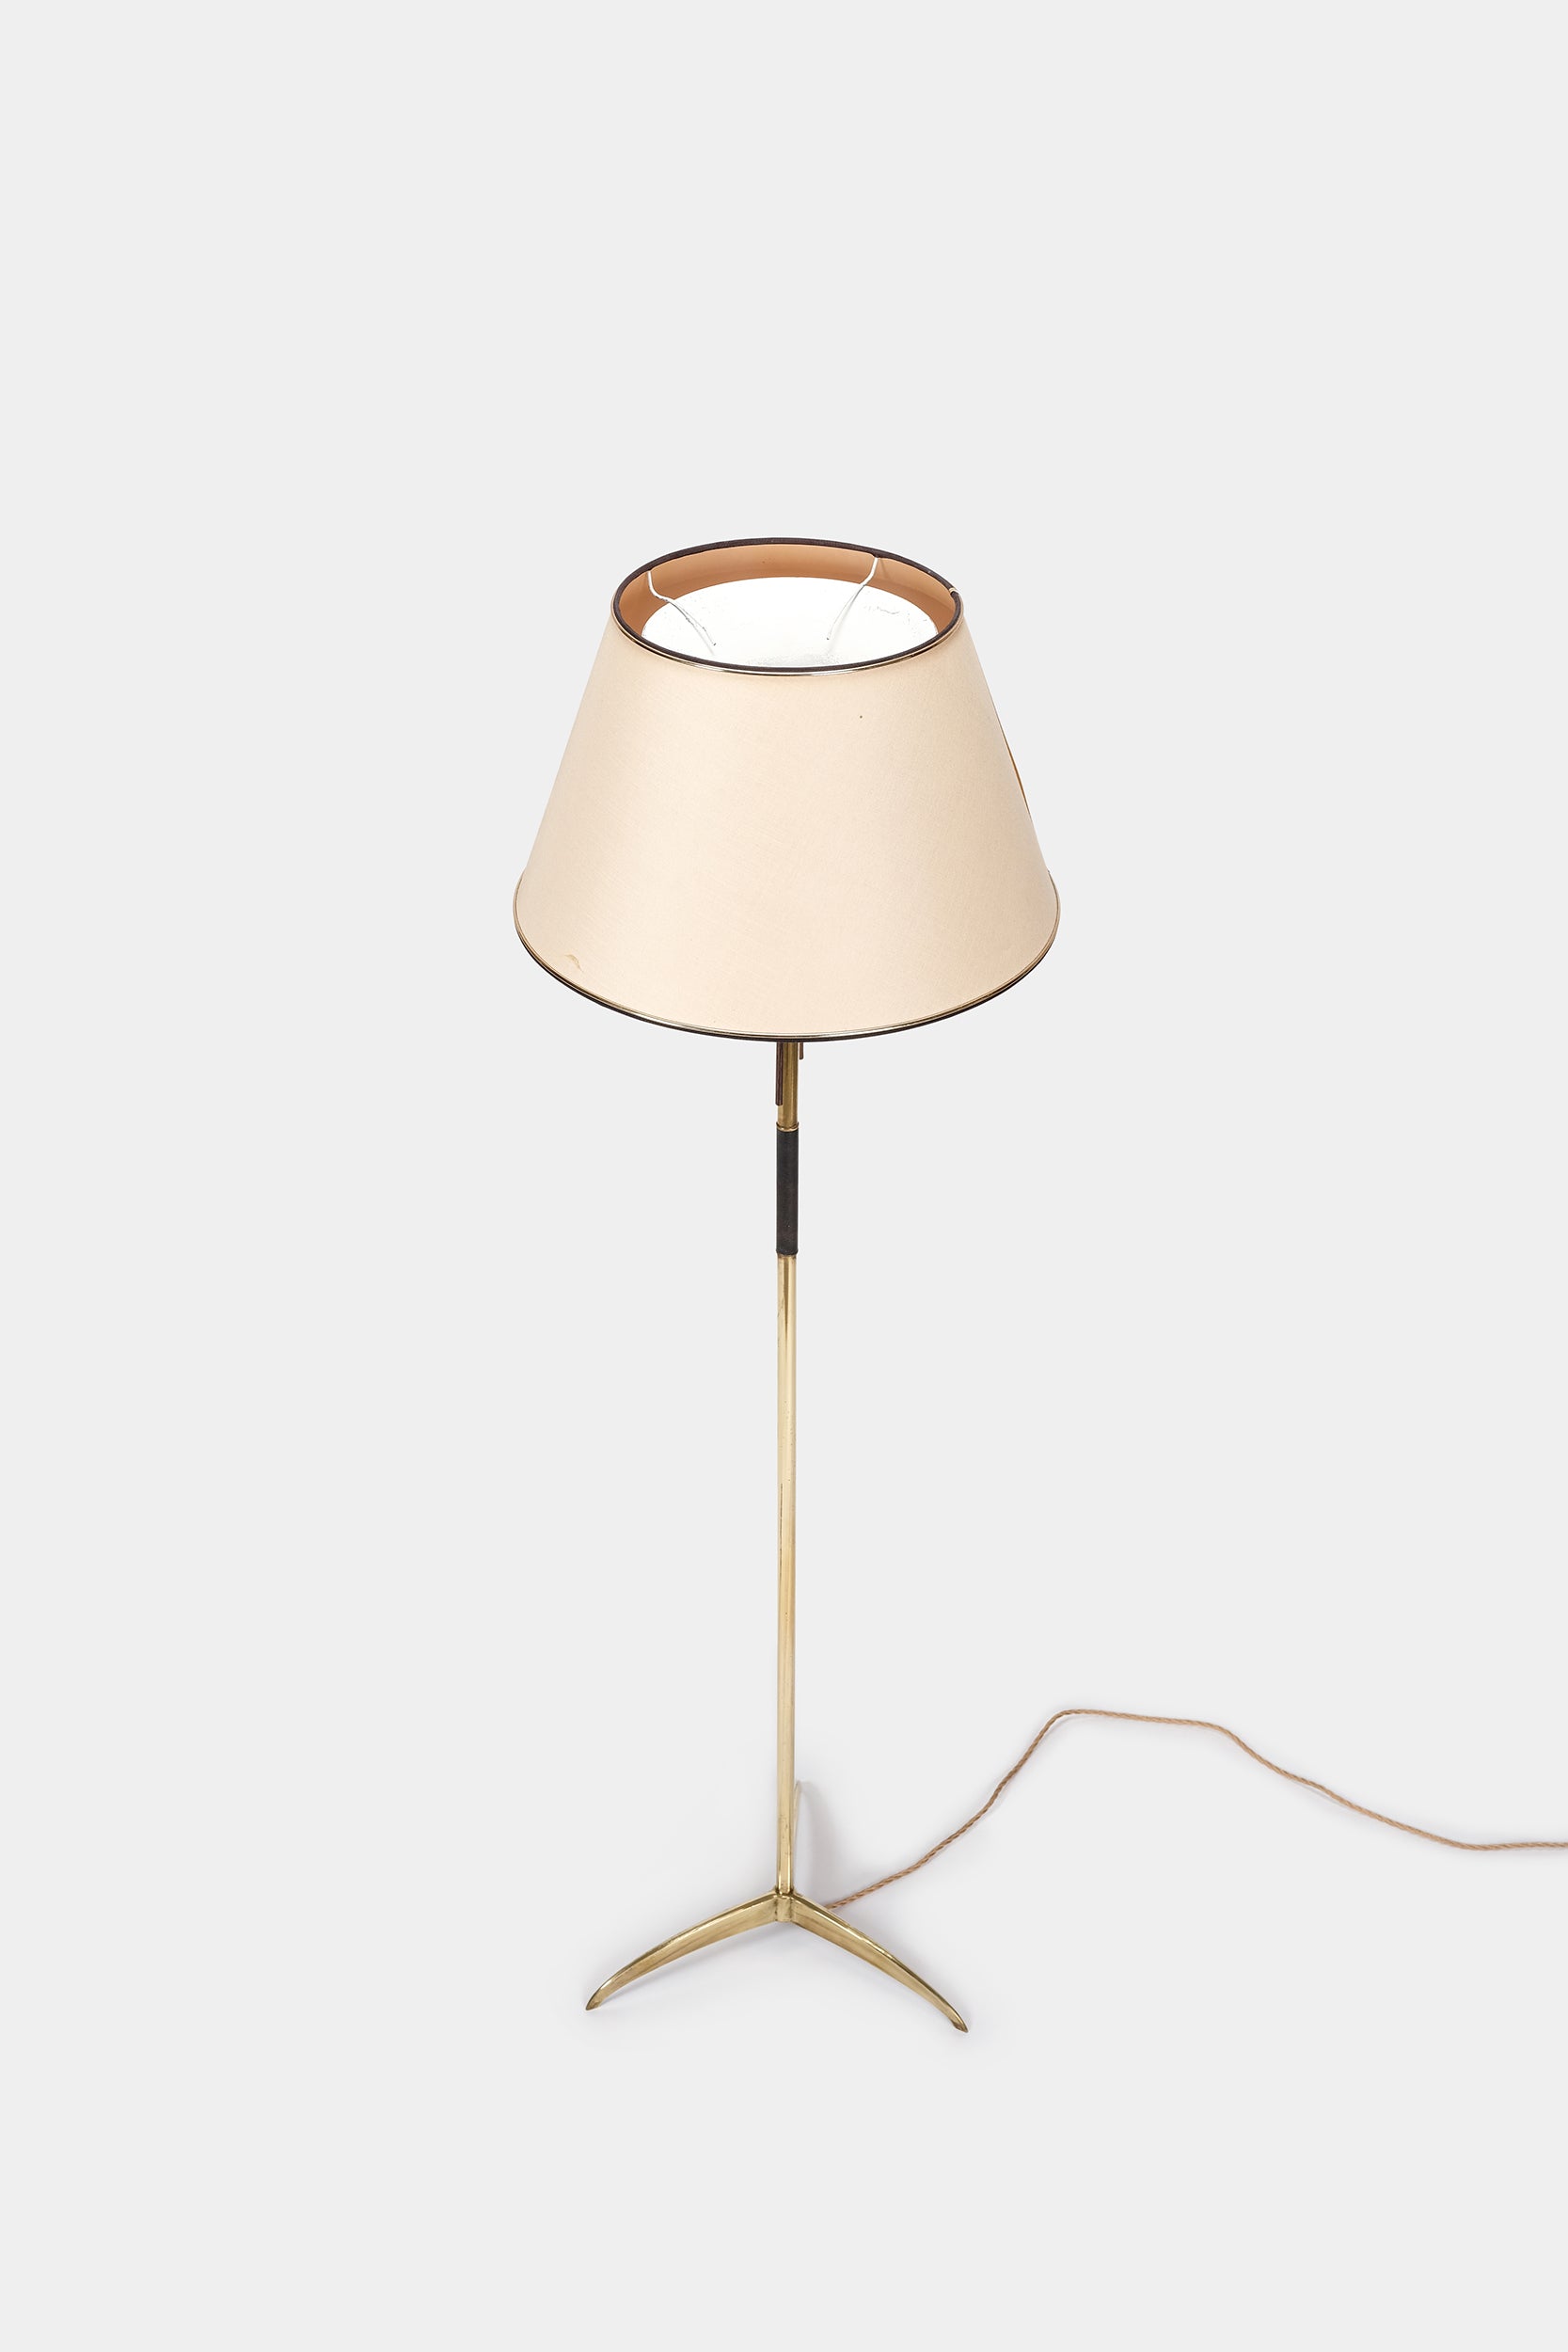 Floor Lamp, France, 60s